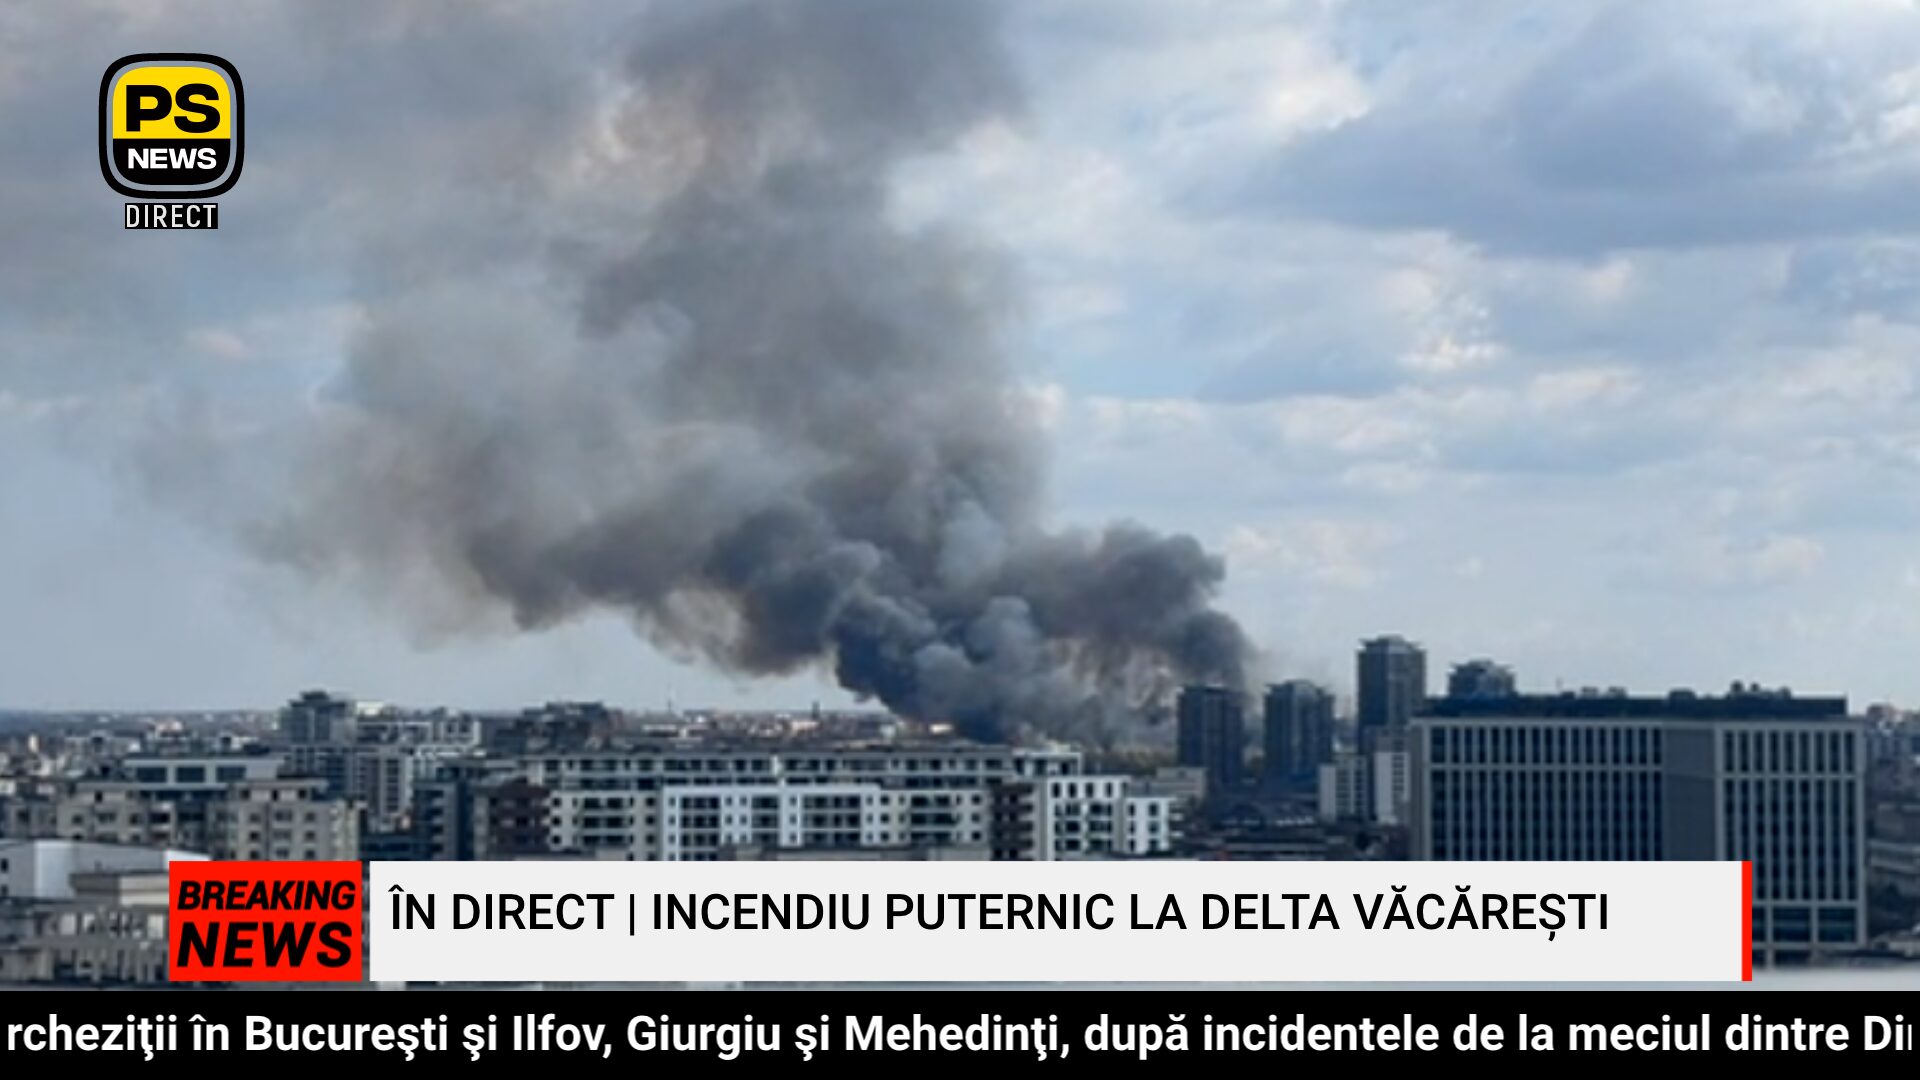 PS News TV | Imagini în direct | Incendiu puternic la Delta Văcărești